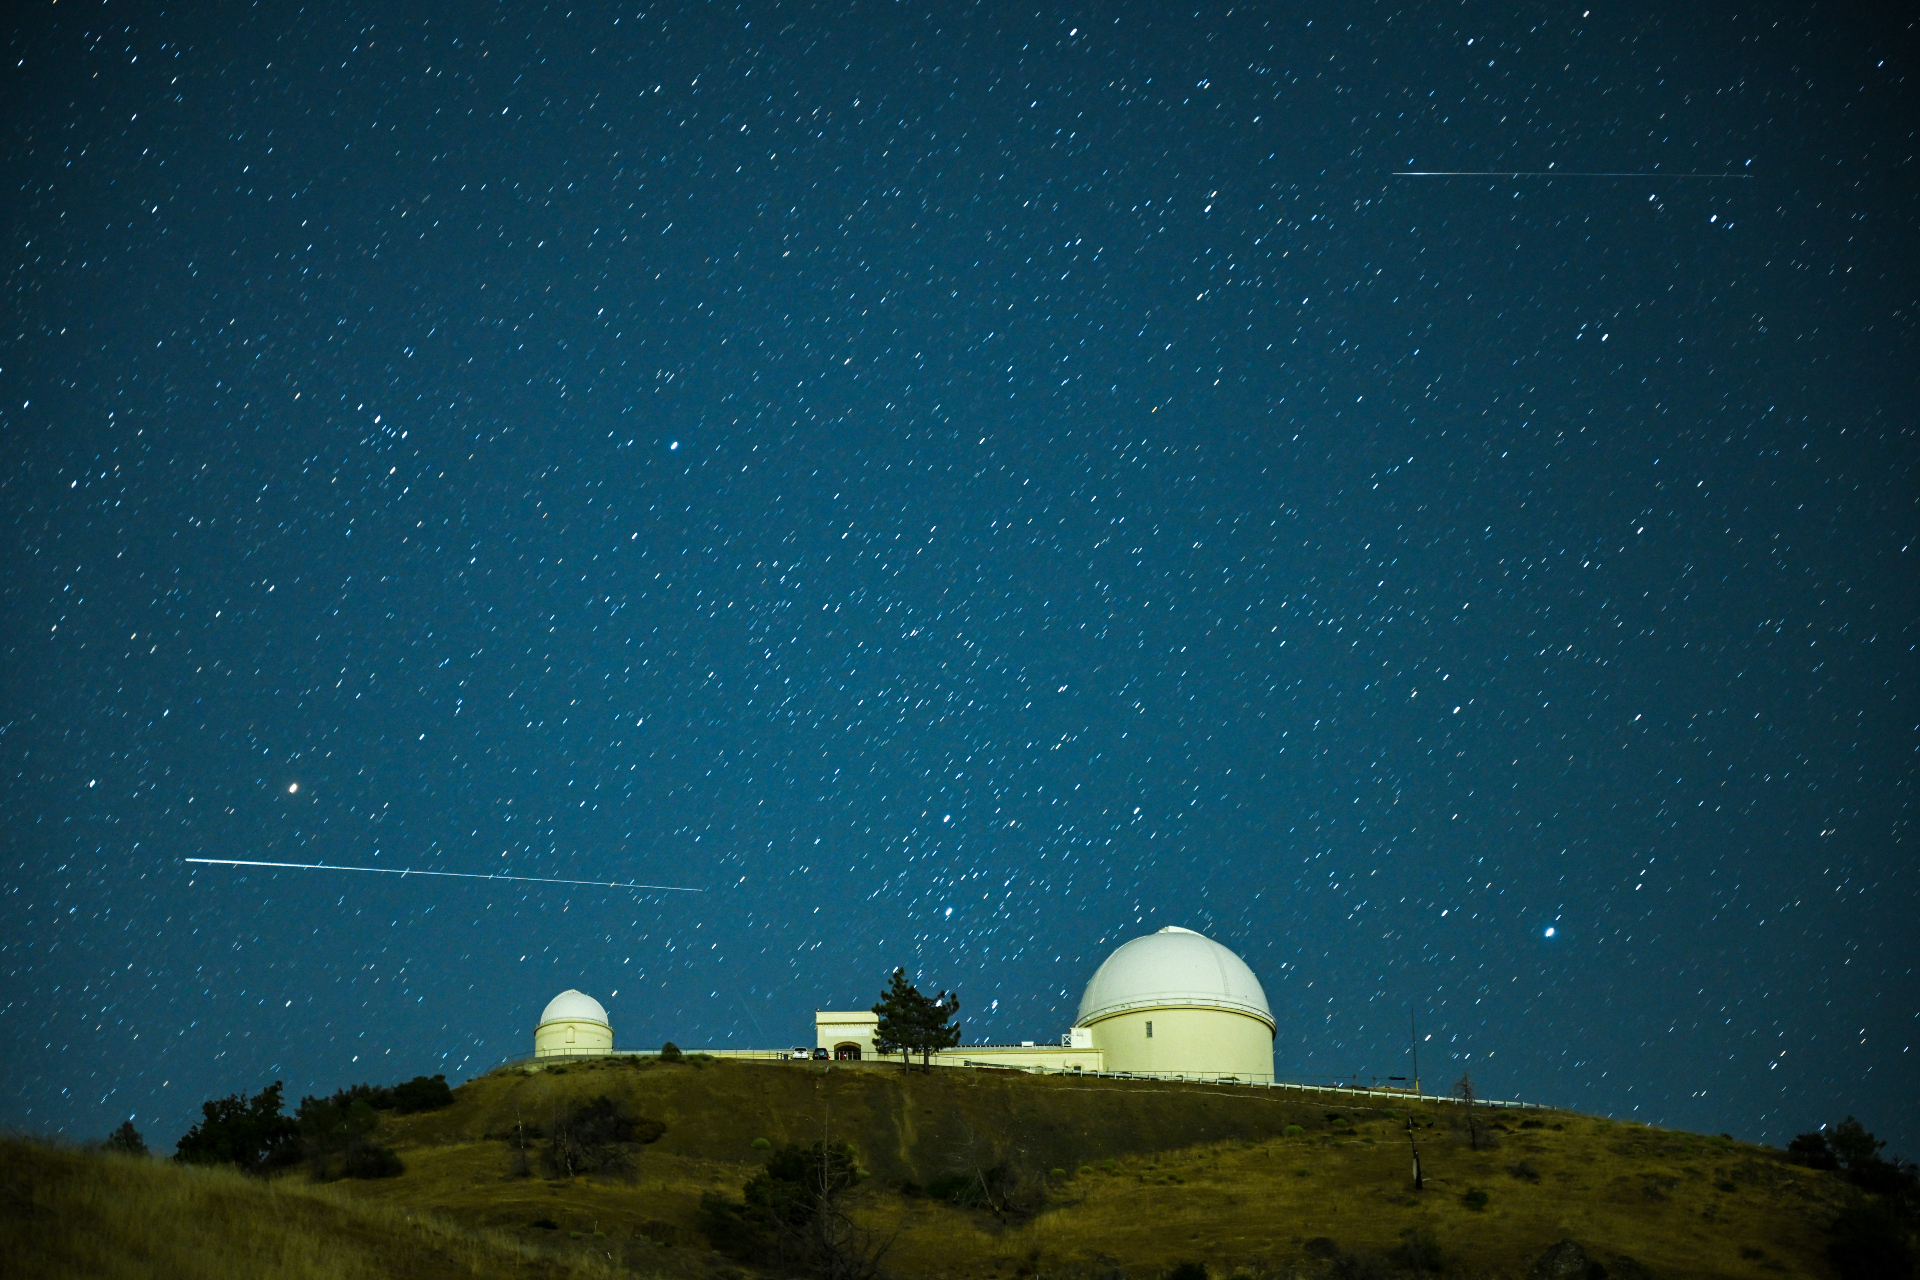 Um longo trem branco do meteoro Perseidas passa sobre a estrutura abobadada do Observatório do Lago em uma direção horizontal contra um céu estrelado.